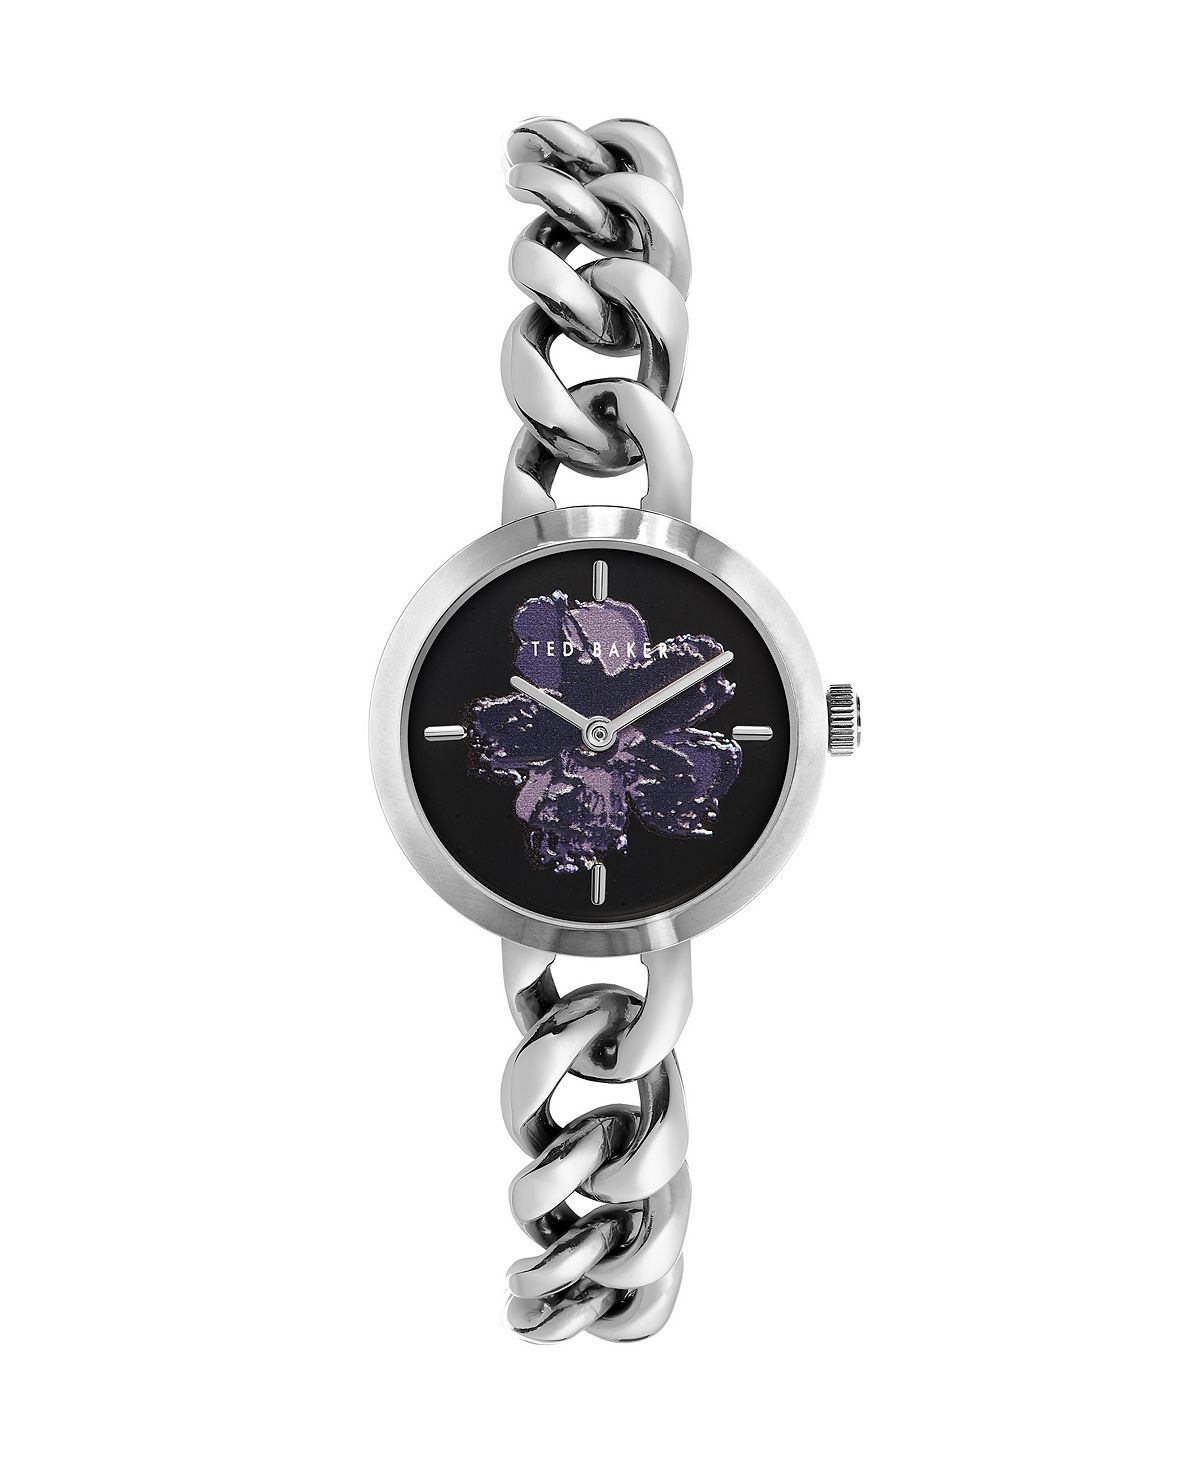 Женские часы Maiisie серебристого цвета с браслетом из нержавеющей стали, 28 мм Ted Baker